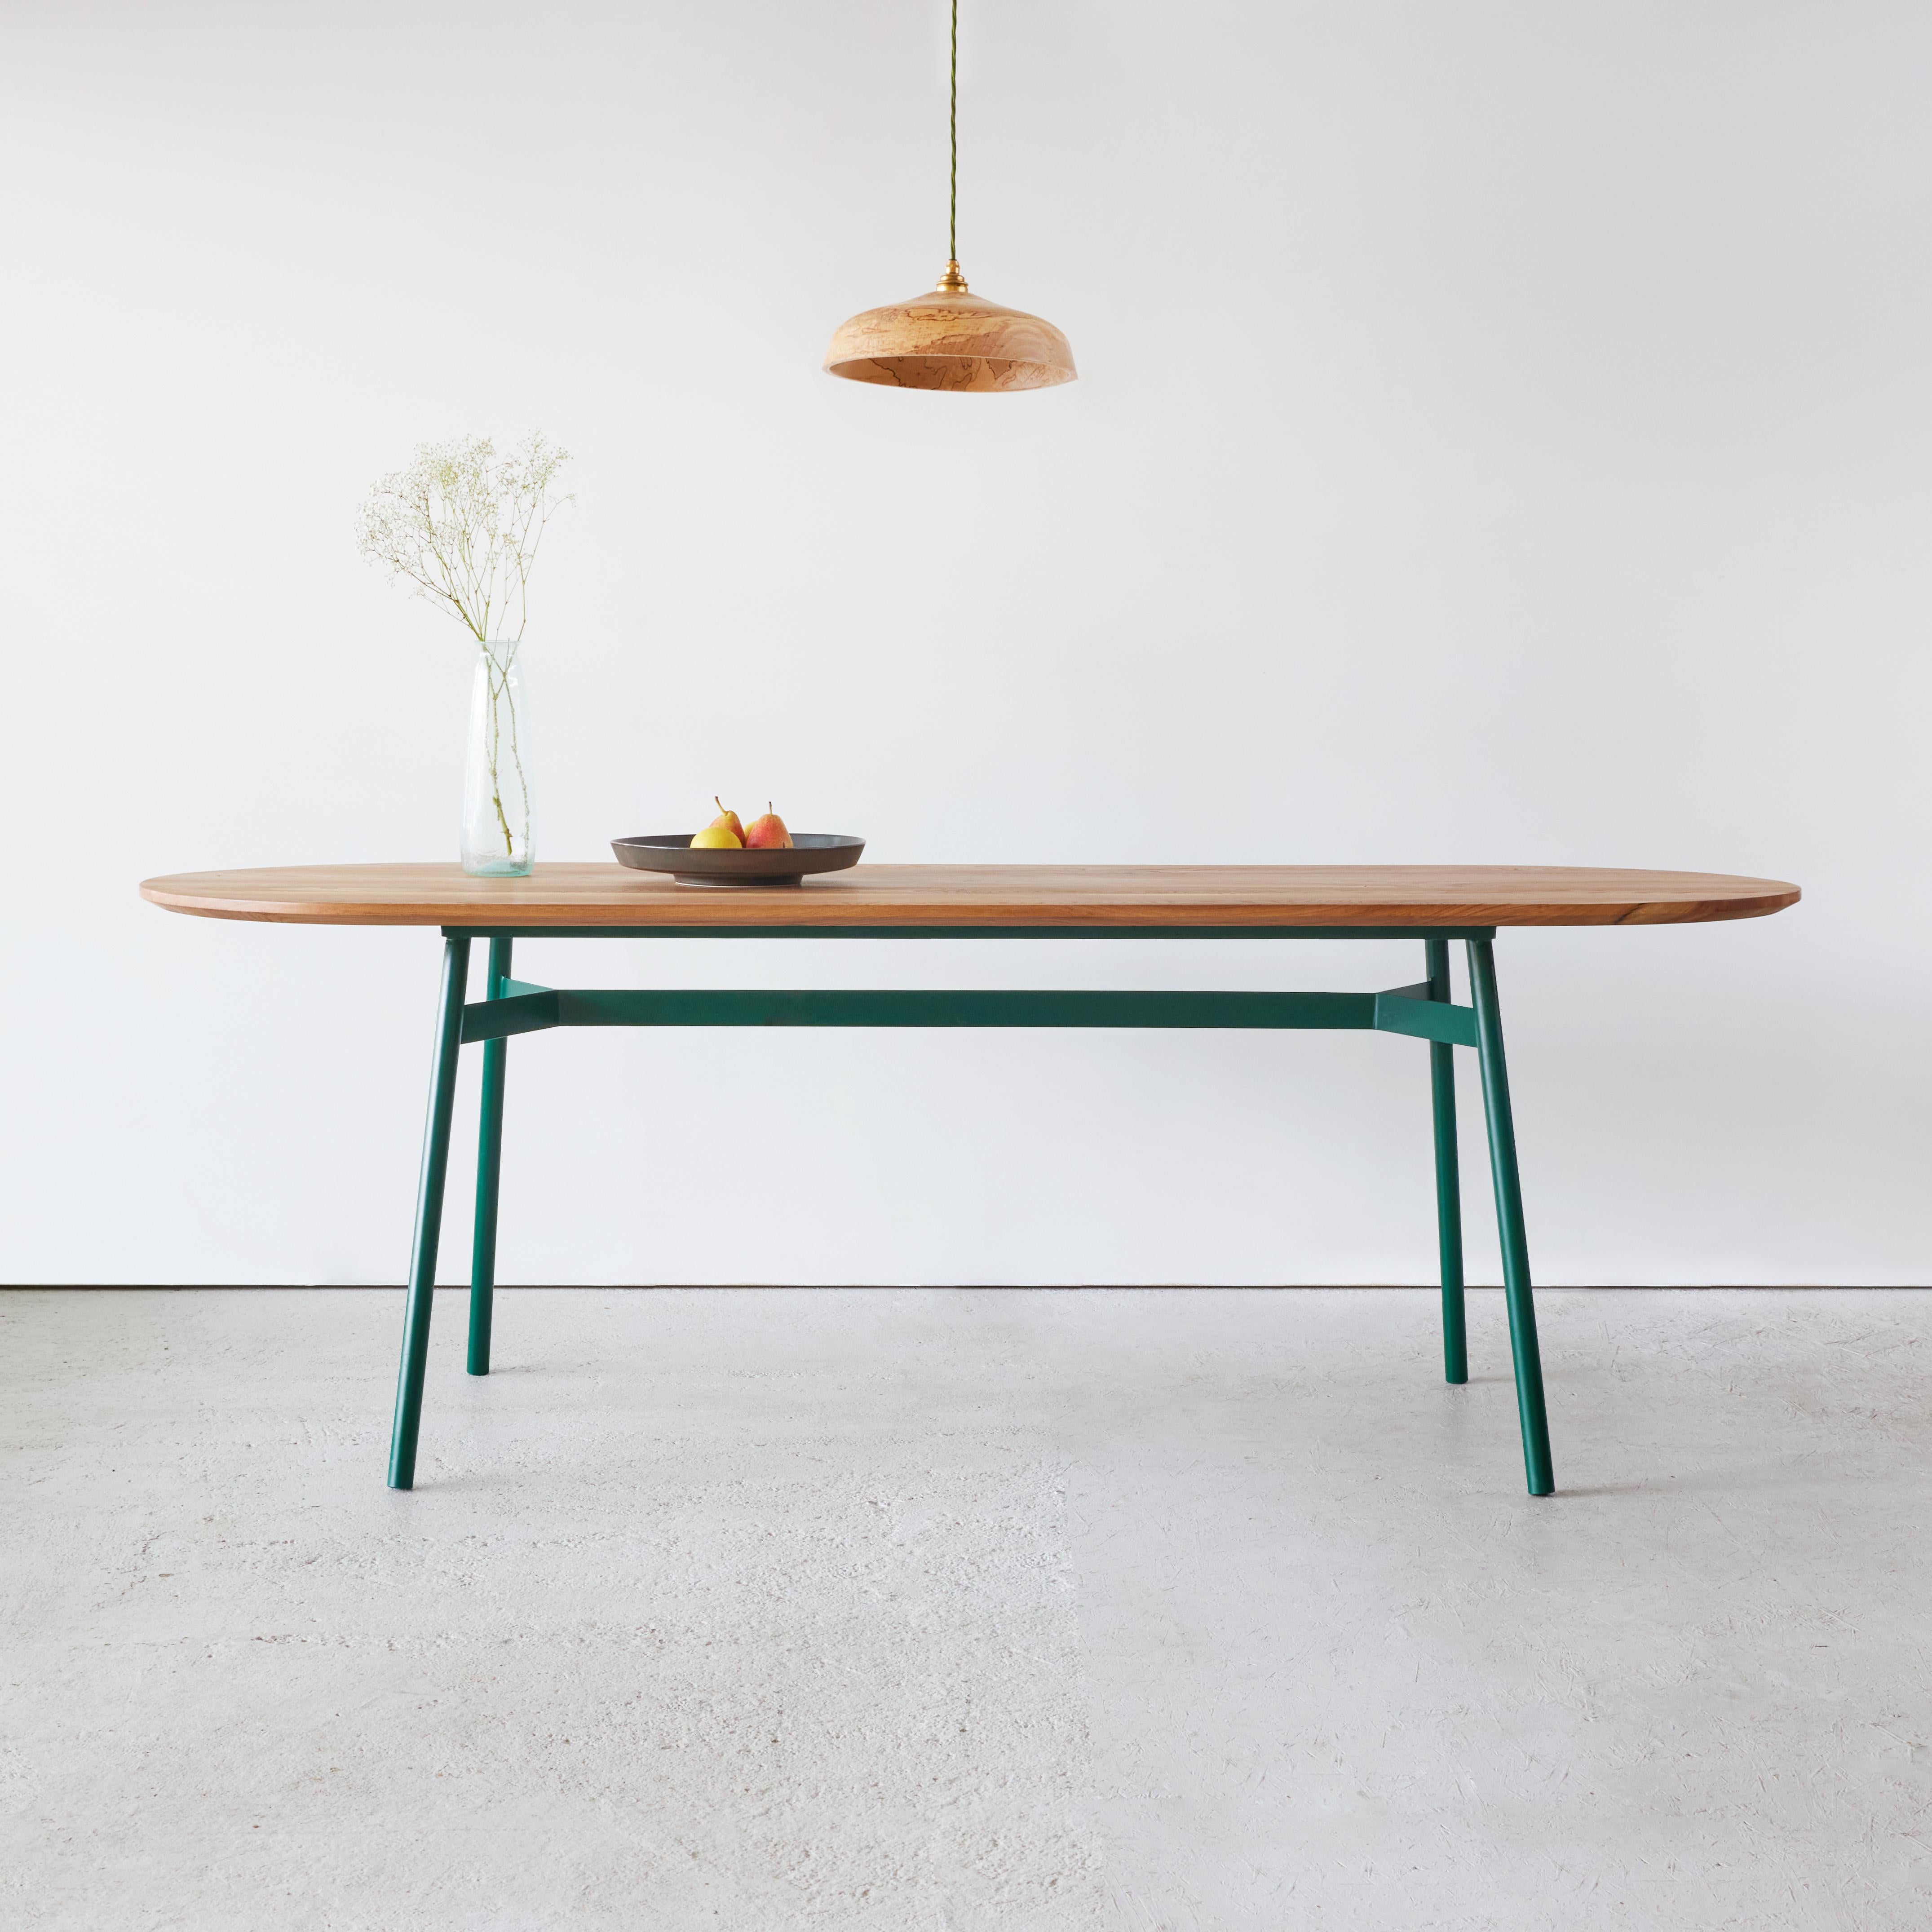 Cette table de salle à manger contemporaine allie élégance et confort. Avec sa forme à la fois saisissante et simple, l'a.muse s'adapte à une grande variété d'espaces de vie. 

Le plateau de la table est élégamment arrondi, de sorte qu'il y a